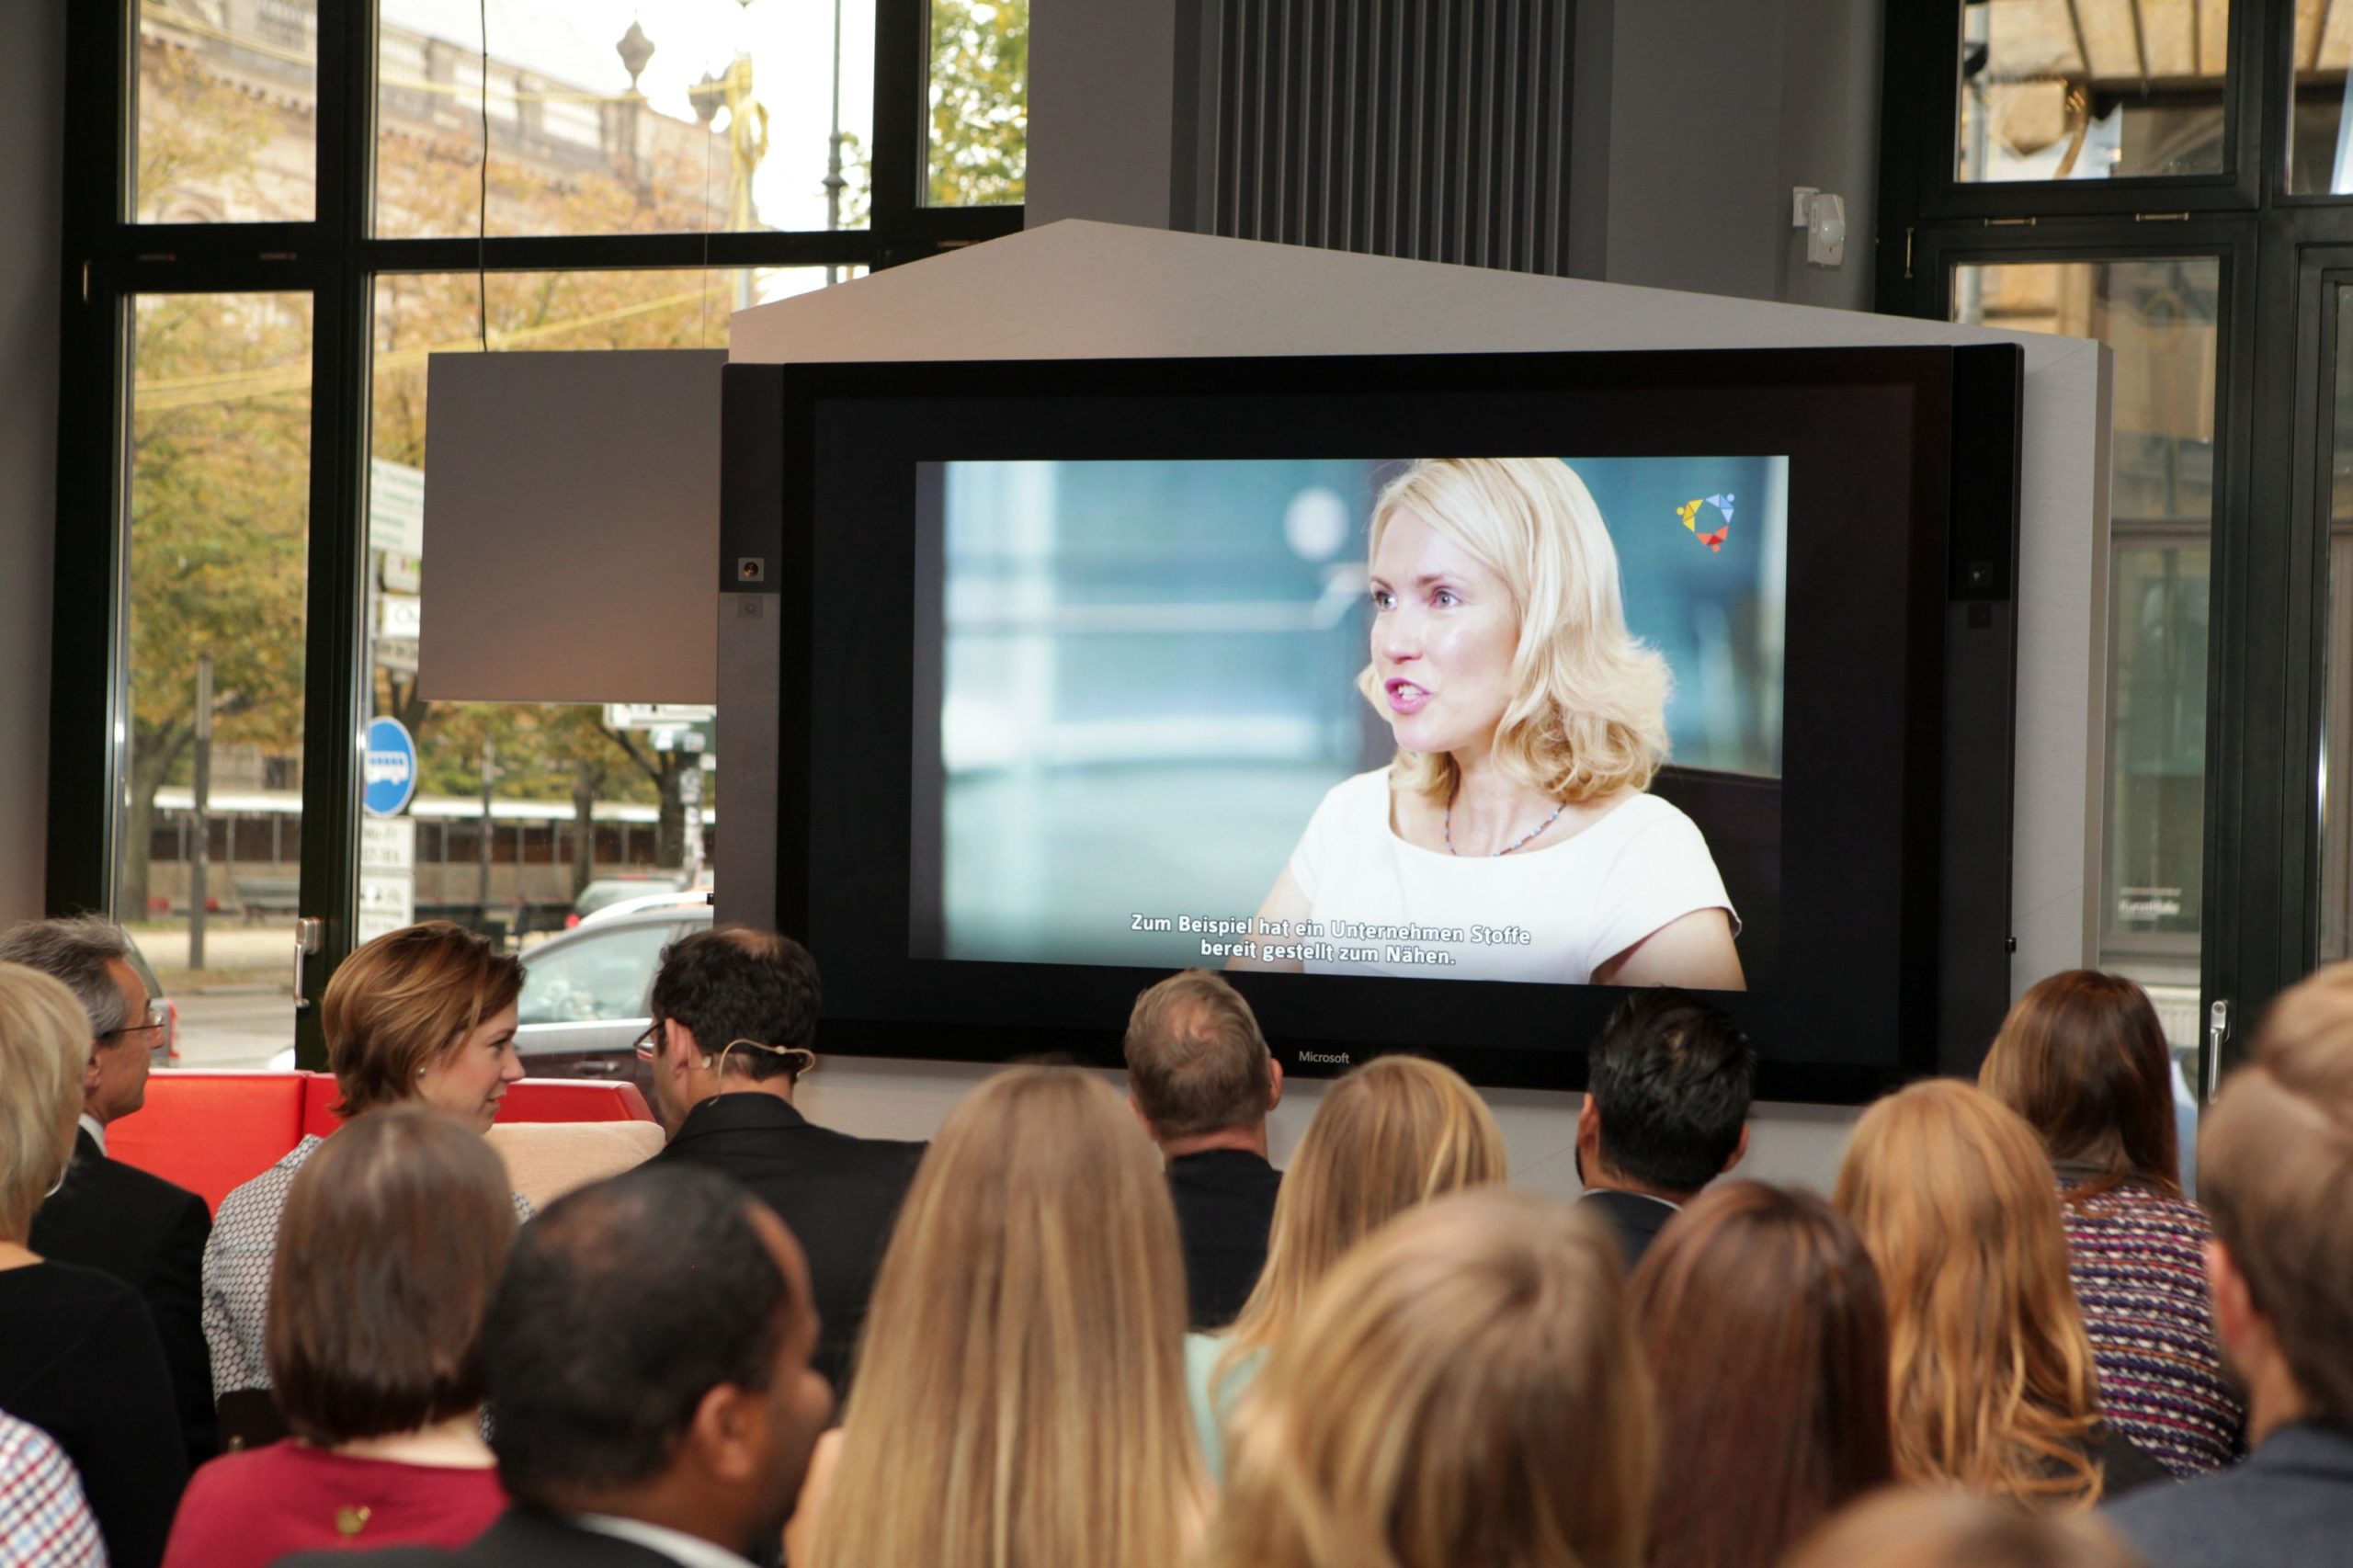 Eine junge, blonde Frau ist auf einem großen Bildschirm zu sehen, davor sind Menschen von hinten zu sehen, die in Stuhlreihen sitzen.